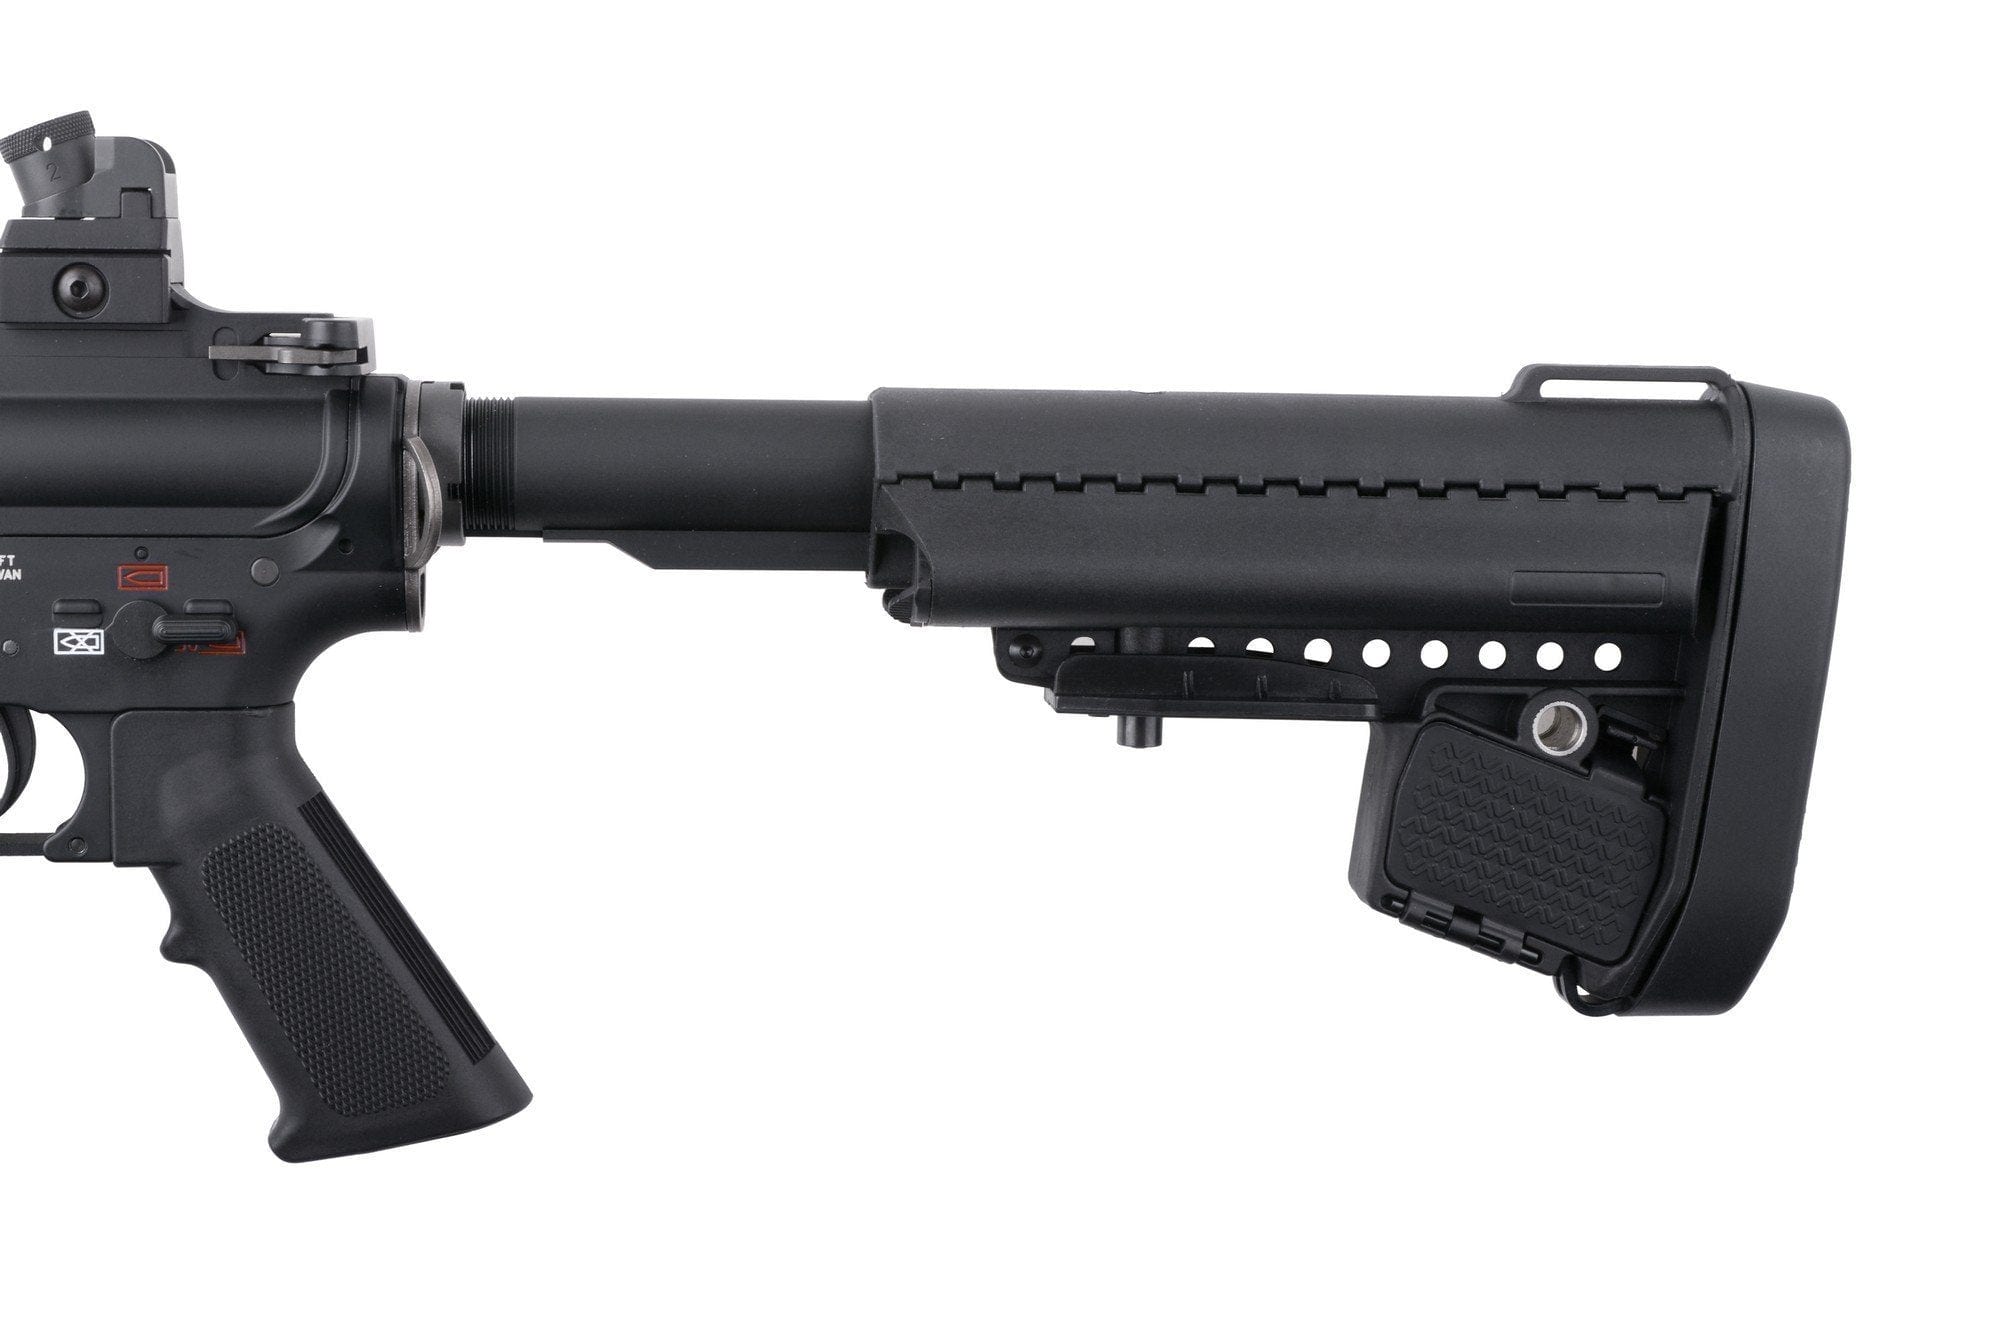 BOLT DEVGRU EXT (B.R.S.S.) Carbine Replica – Black by BOLT on Airsoft Mania Europe